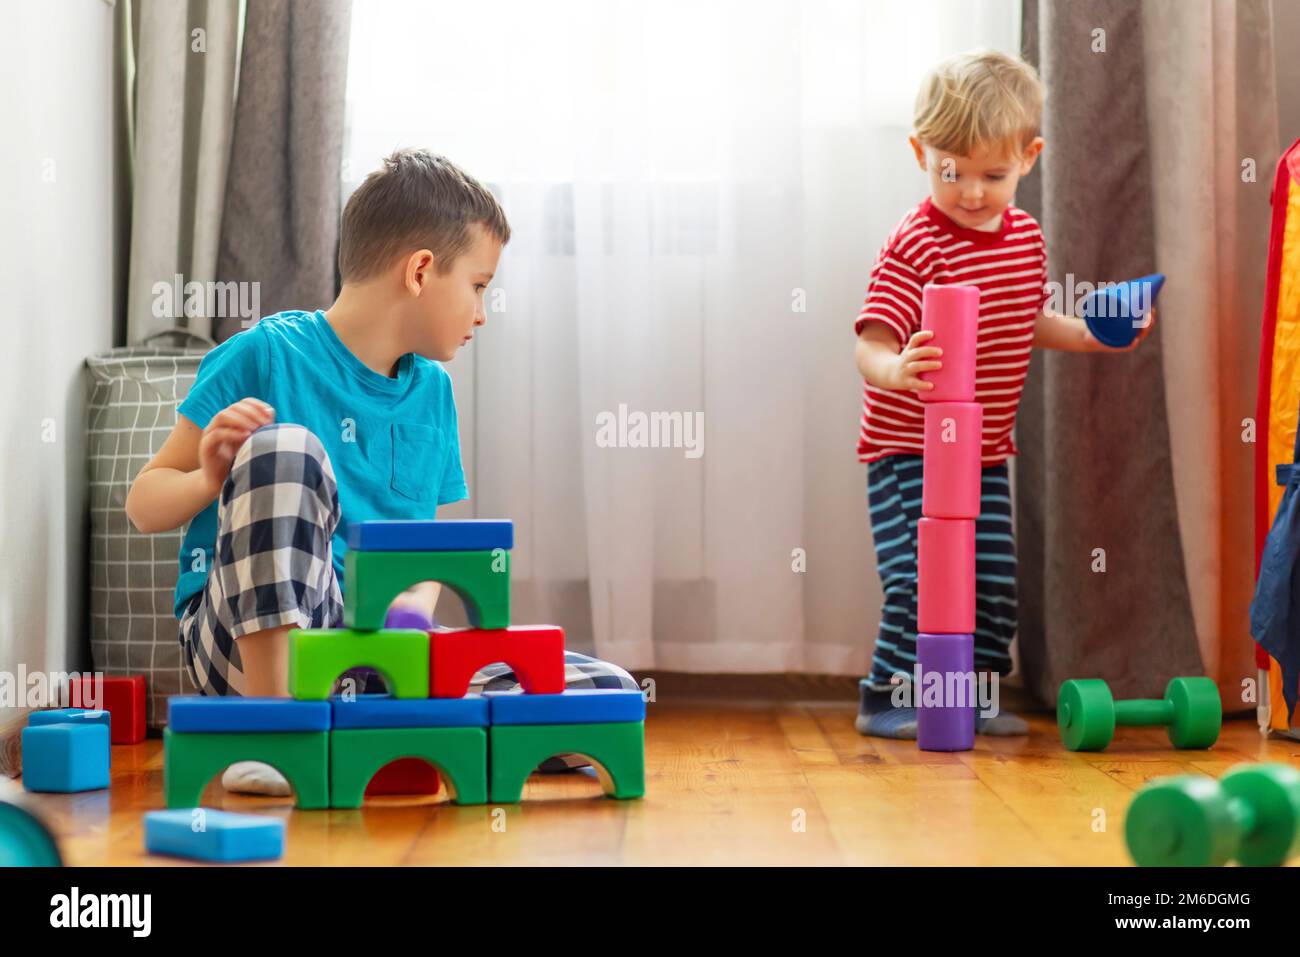 Niedliche kleine Kinder, die mit bunten Plastikspielzeugen oder Bausteinen spielen Stockfoto